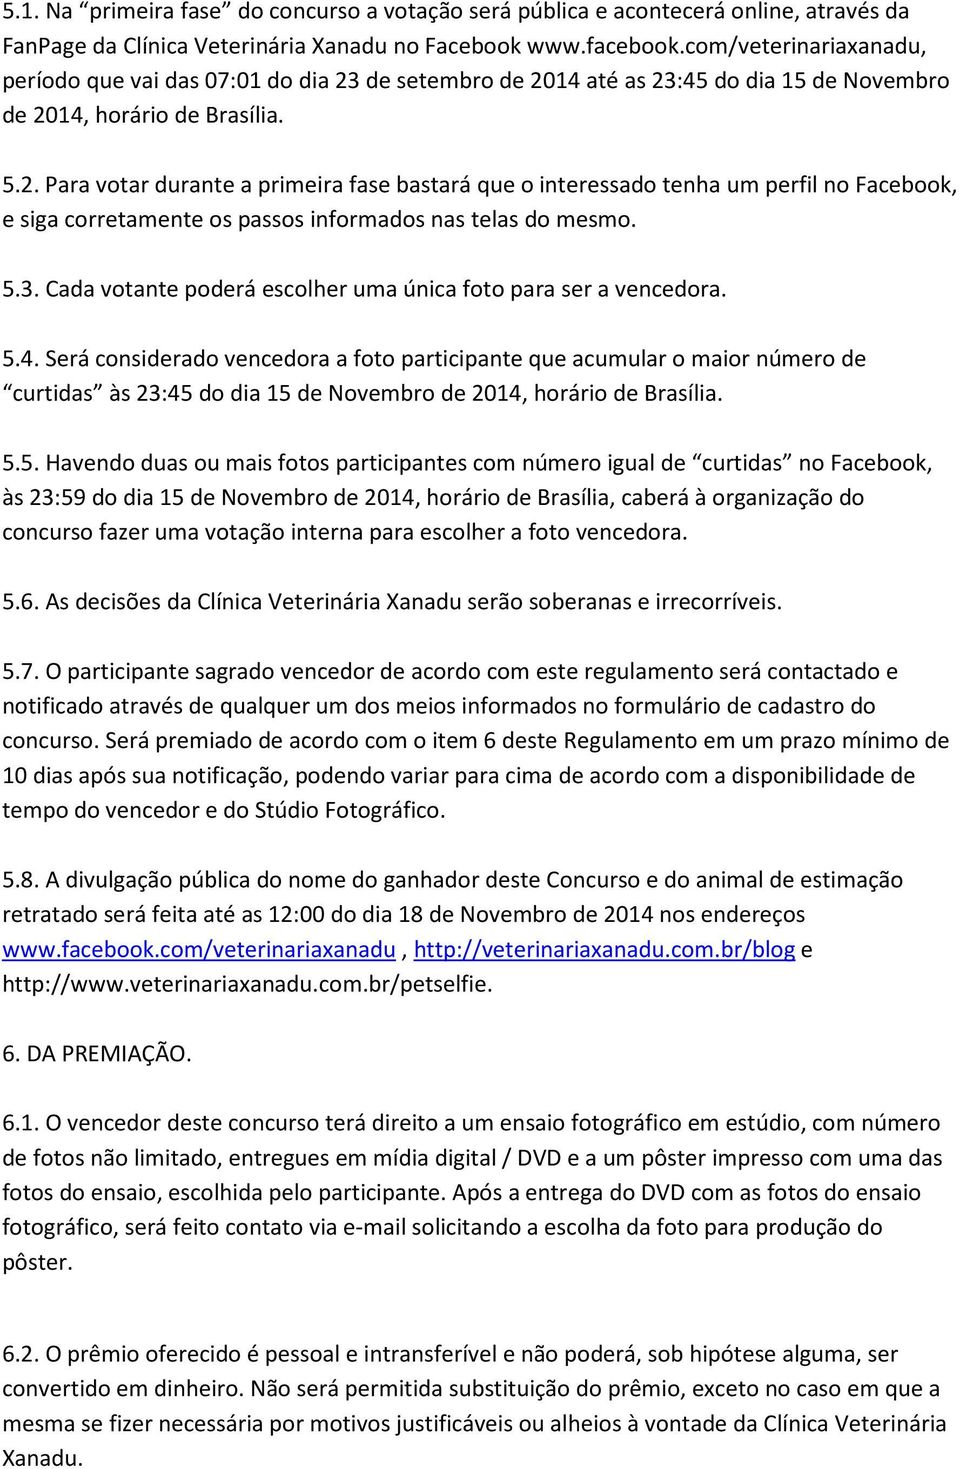 de setembro de 2014 até as 23:45 do dia 15 de Novembro de 2014, horário de Brasília. 5.2. Para votar durante a primeira fase bastará que o interessado tenha um perfil no Facebook, e siga corretamente os passos informados nas telas do mesmo.